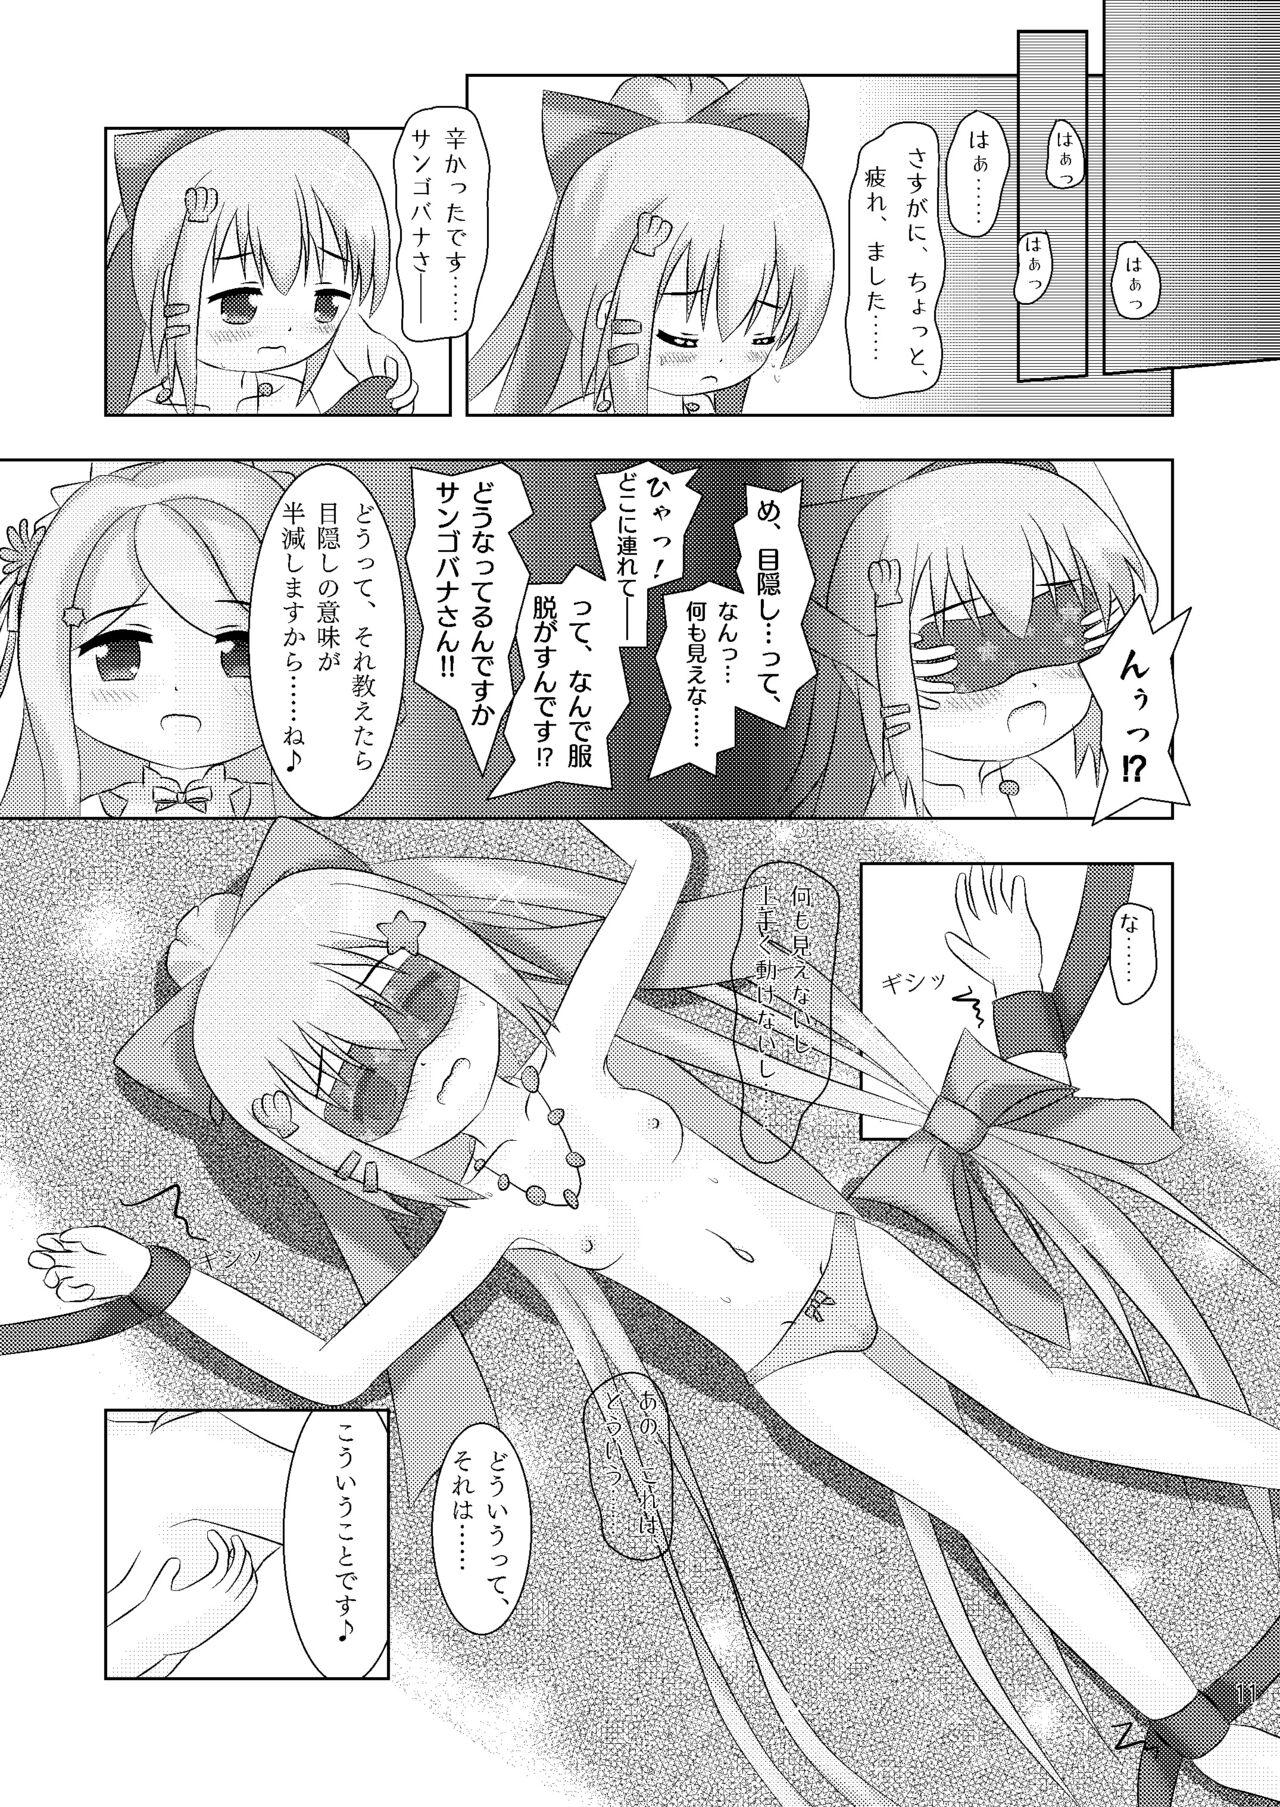 Blackdick Yubisaki ni Tokeru Ningyohime - Sangobana to Nerine no Nakayoshi Kusugurikko + X - Flower knight girl Jerk Off - Page 11